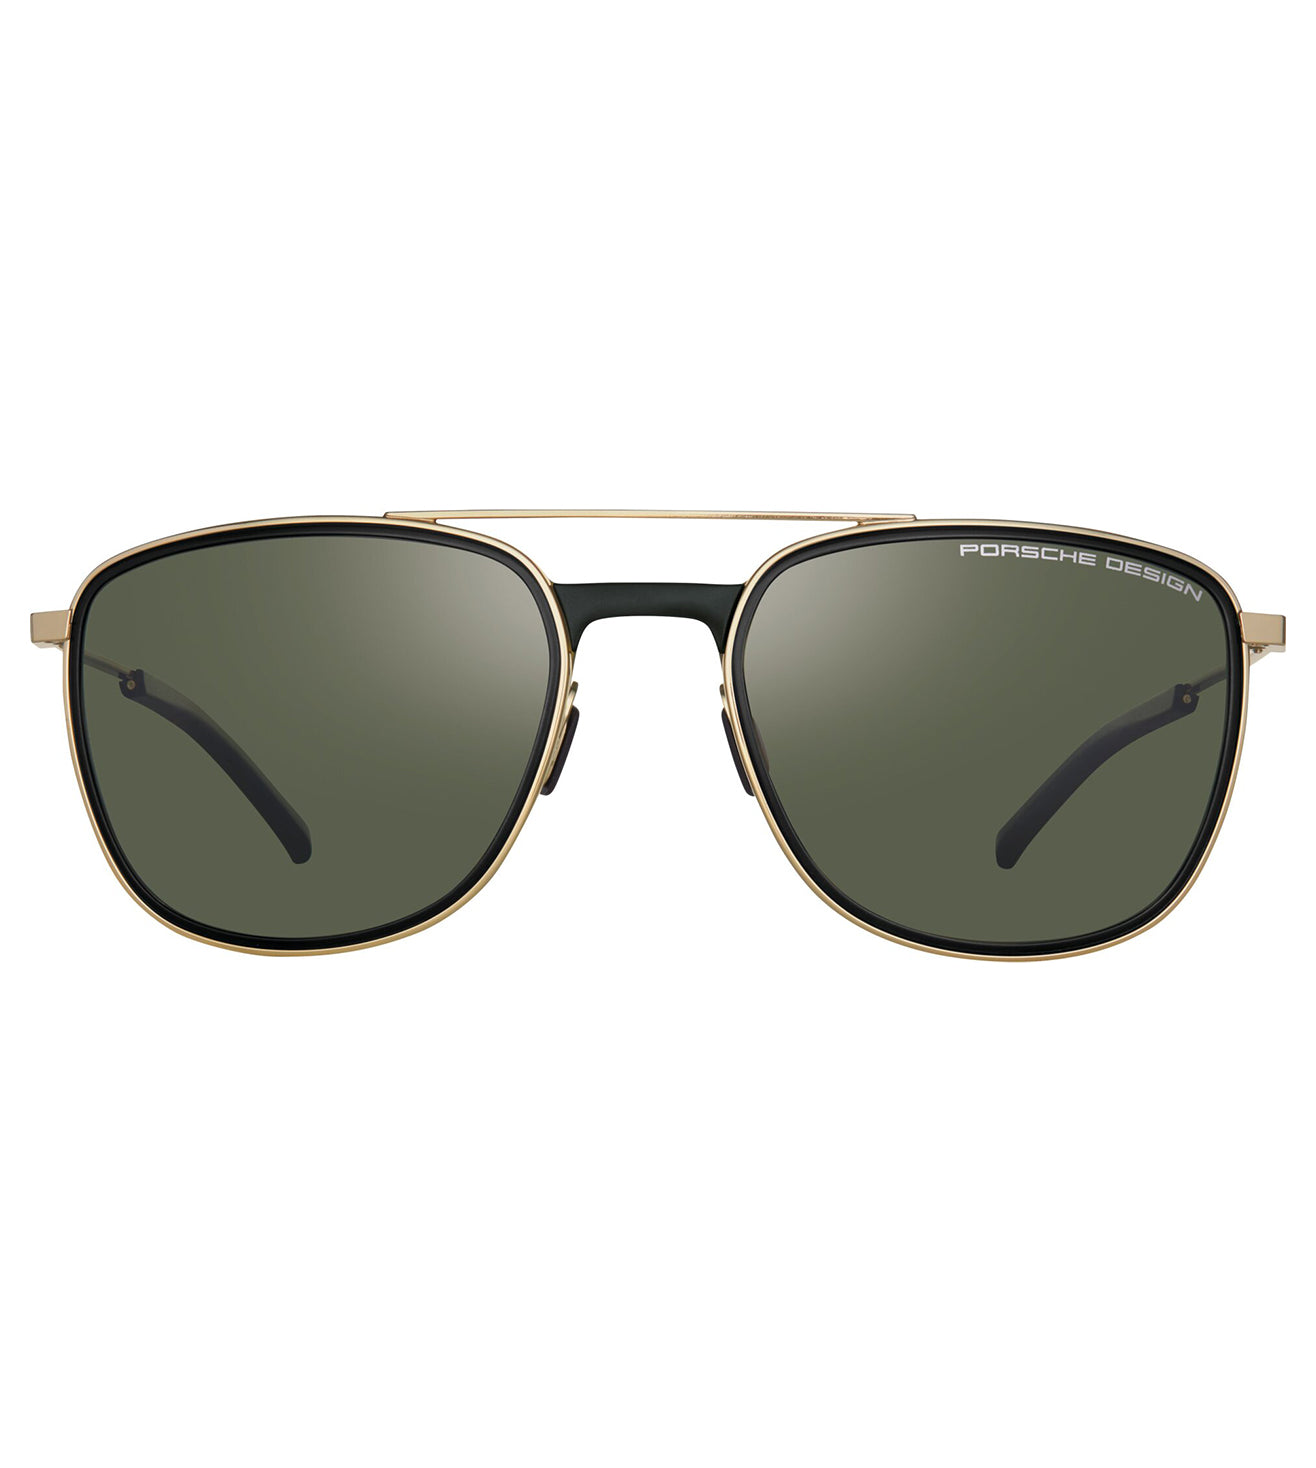 Porsche Design Men's Green Square Sunglasses